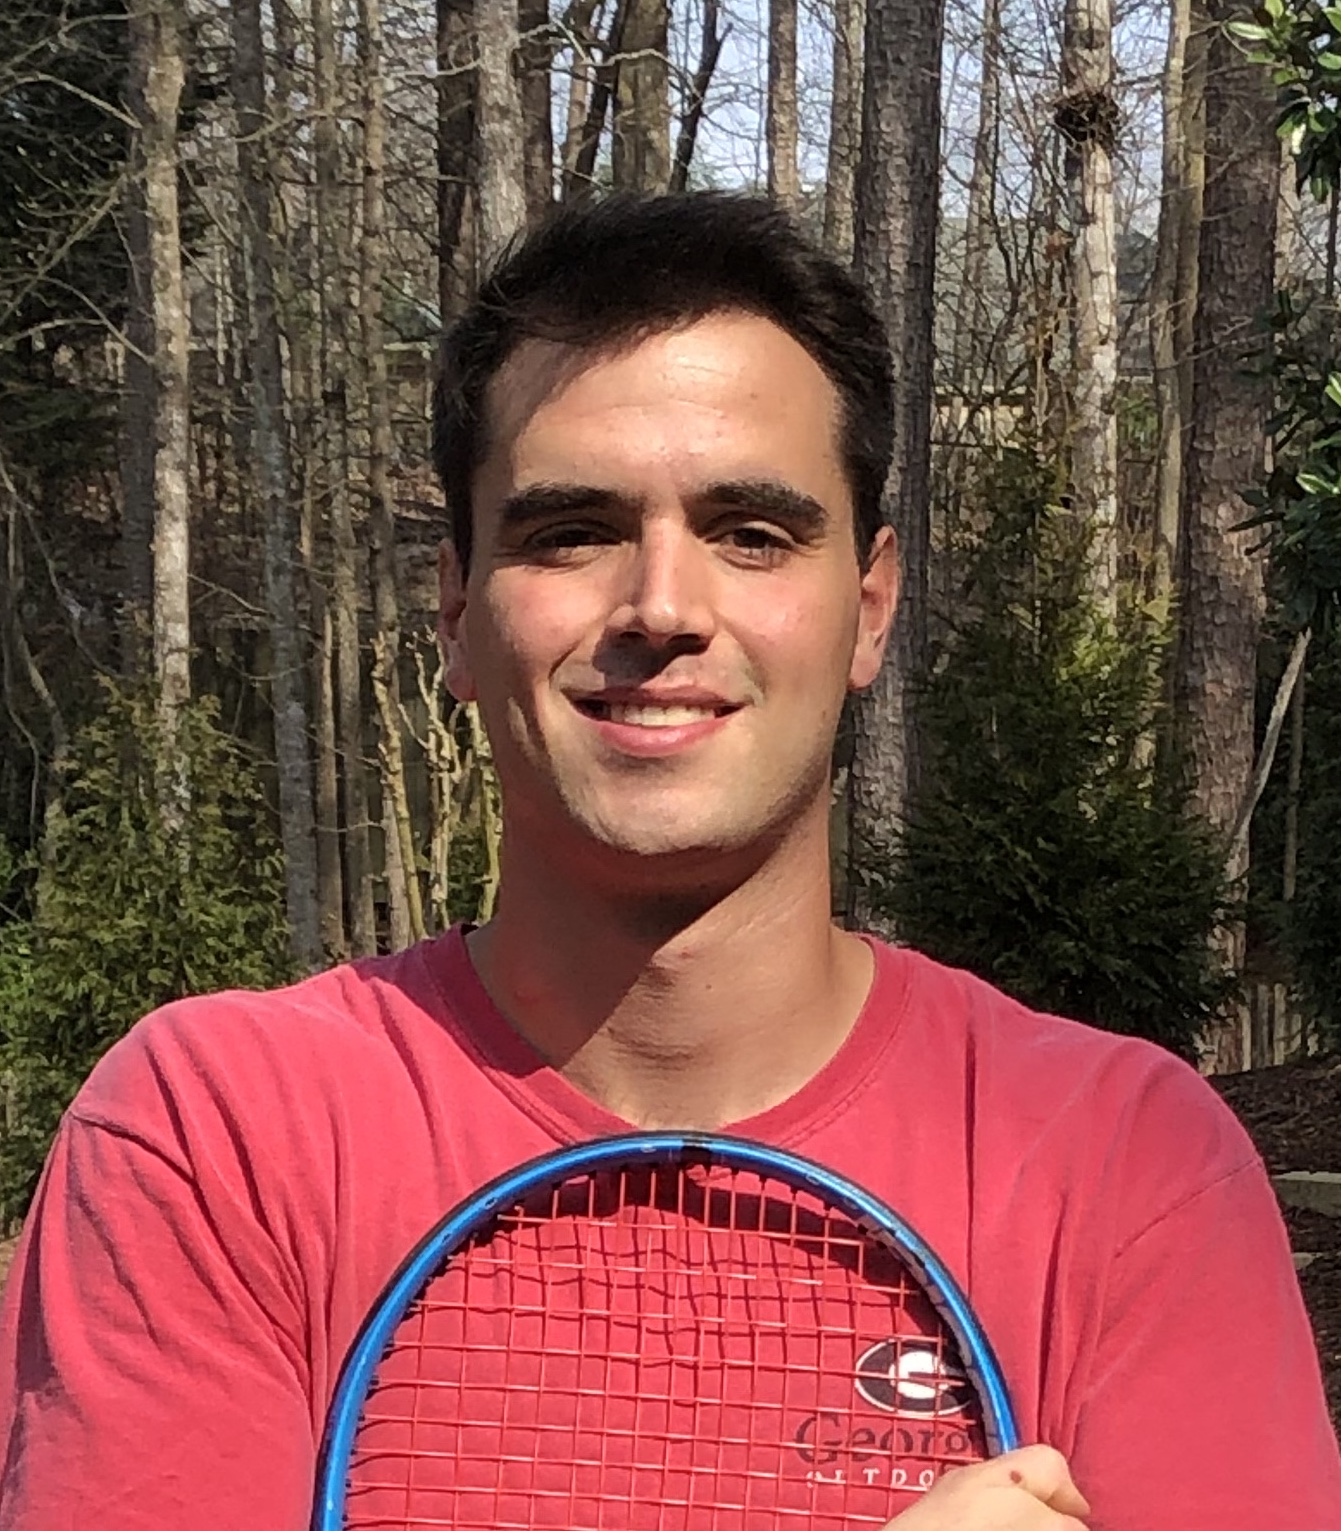 Dalton P. teaches tennis lessons in Charlotte, NC